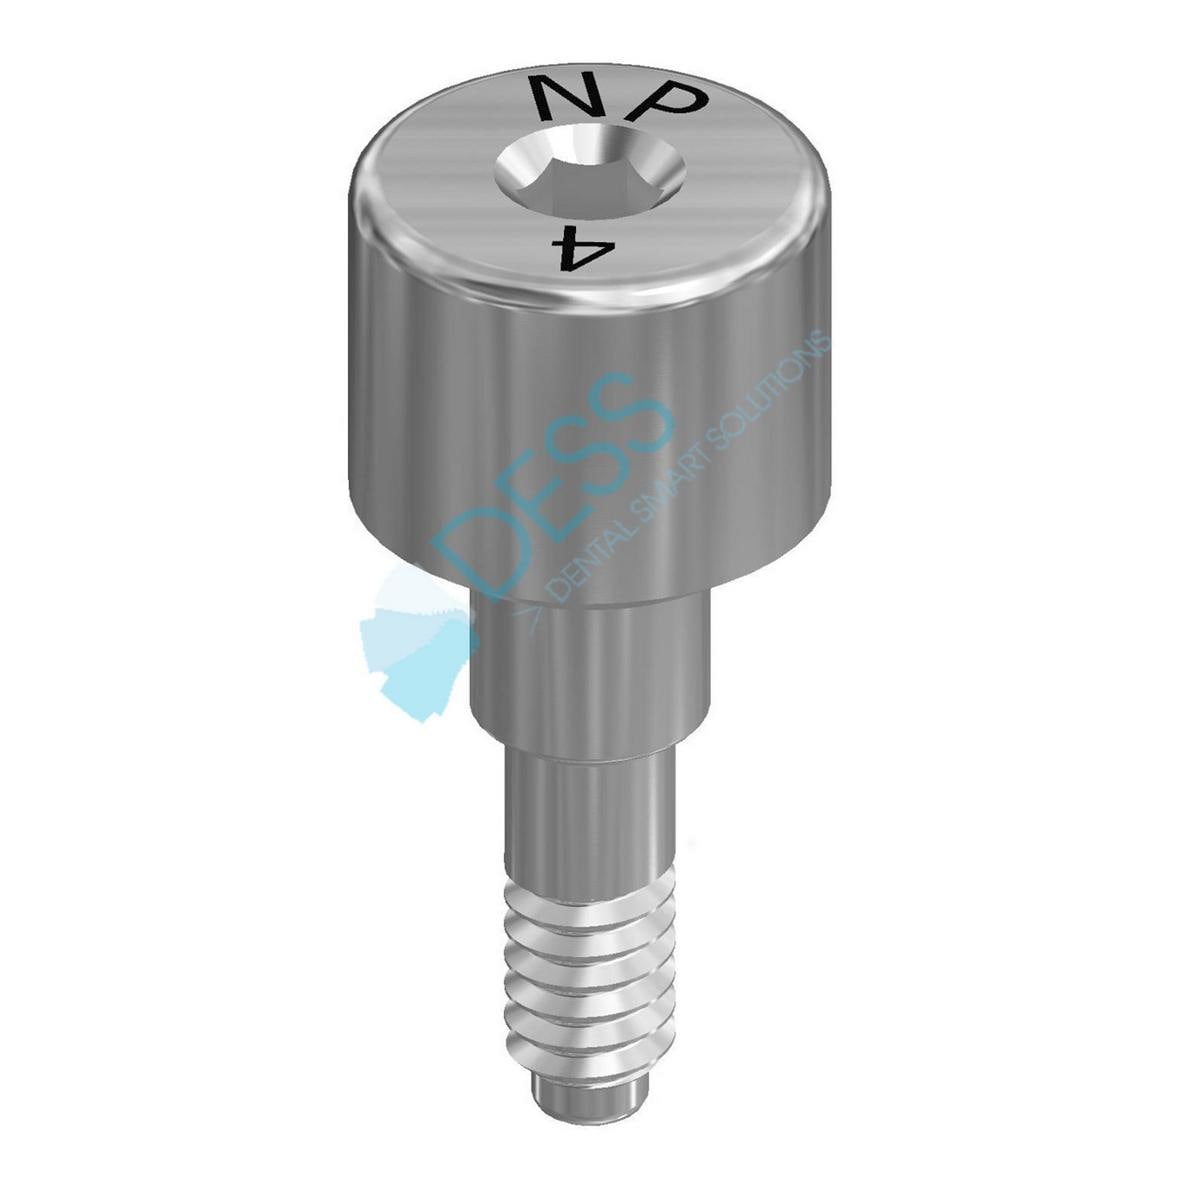 Gingivaformer - kompatibel mit 3i® Certain® - NP Ø 3,45 mm, Höhe 4,0 mm